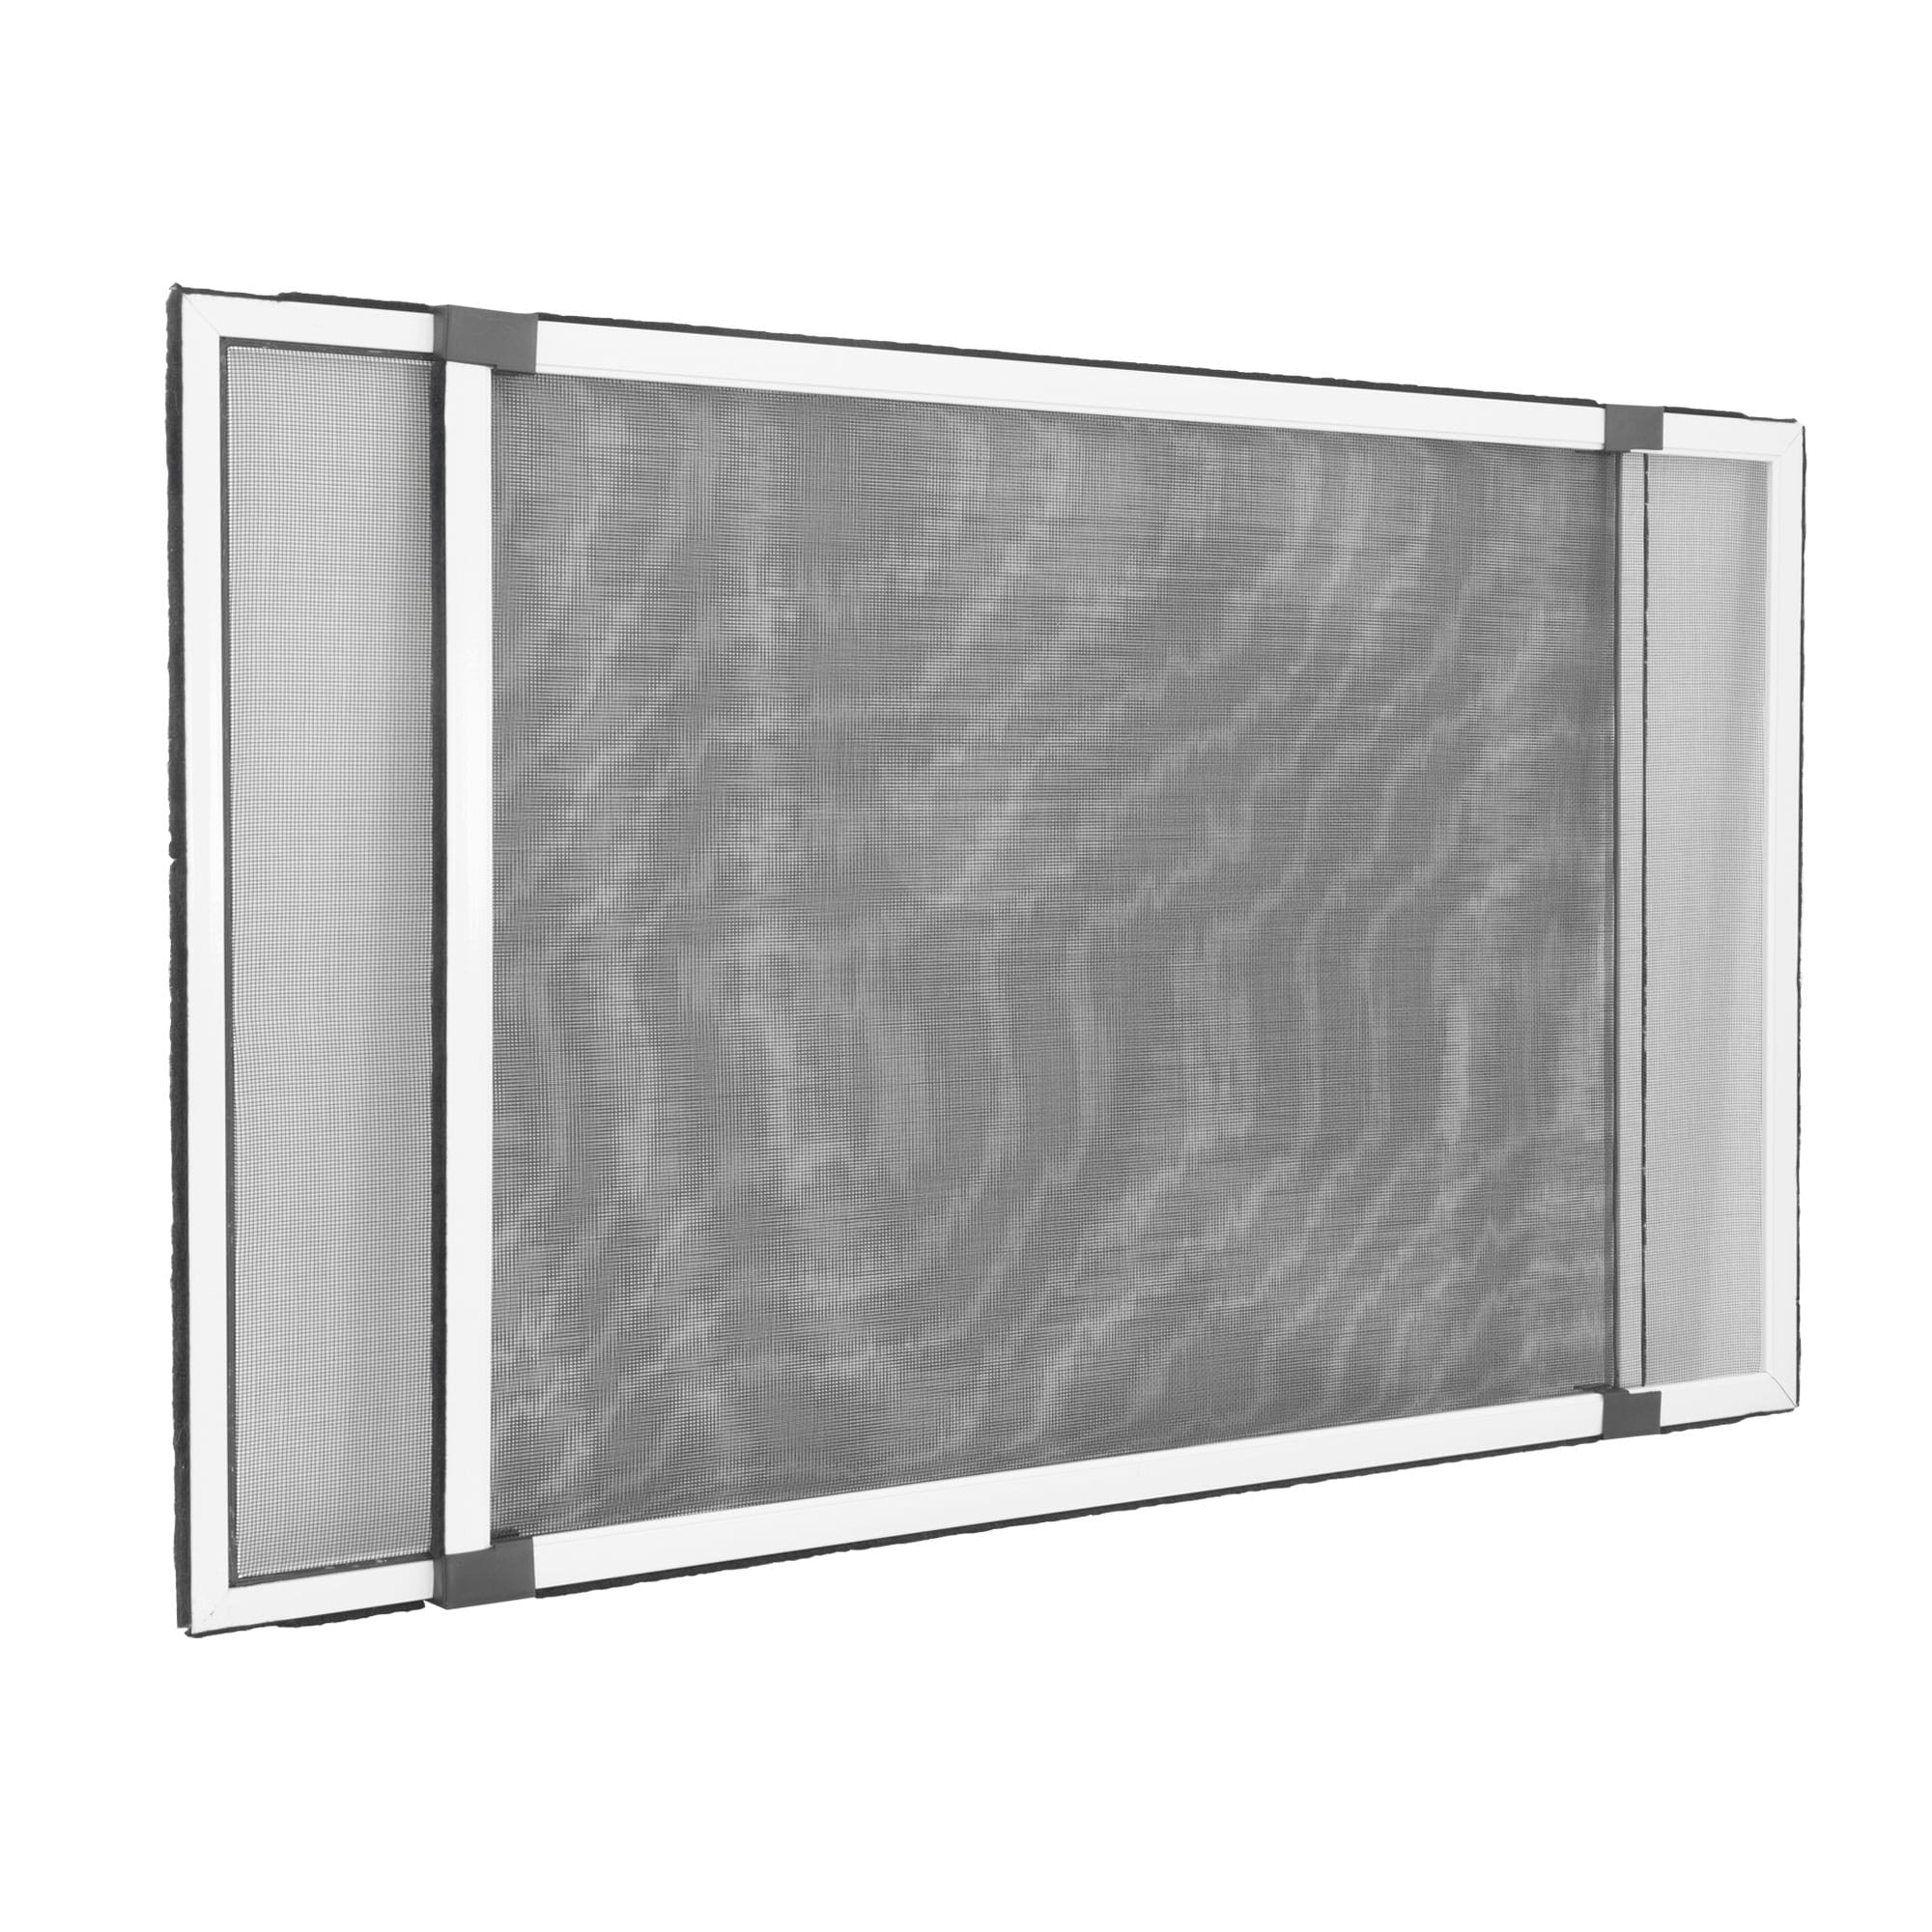 Schiebefenster SLIDE, 142 x 50 cm, weiß